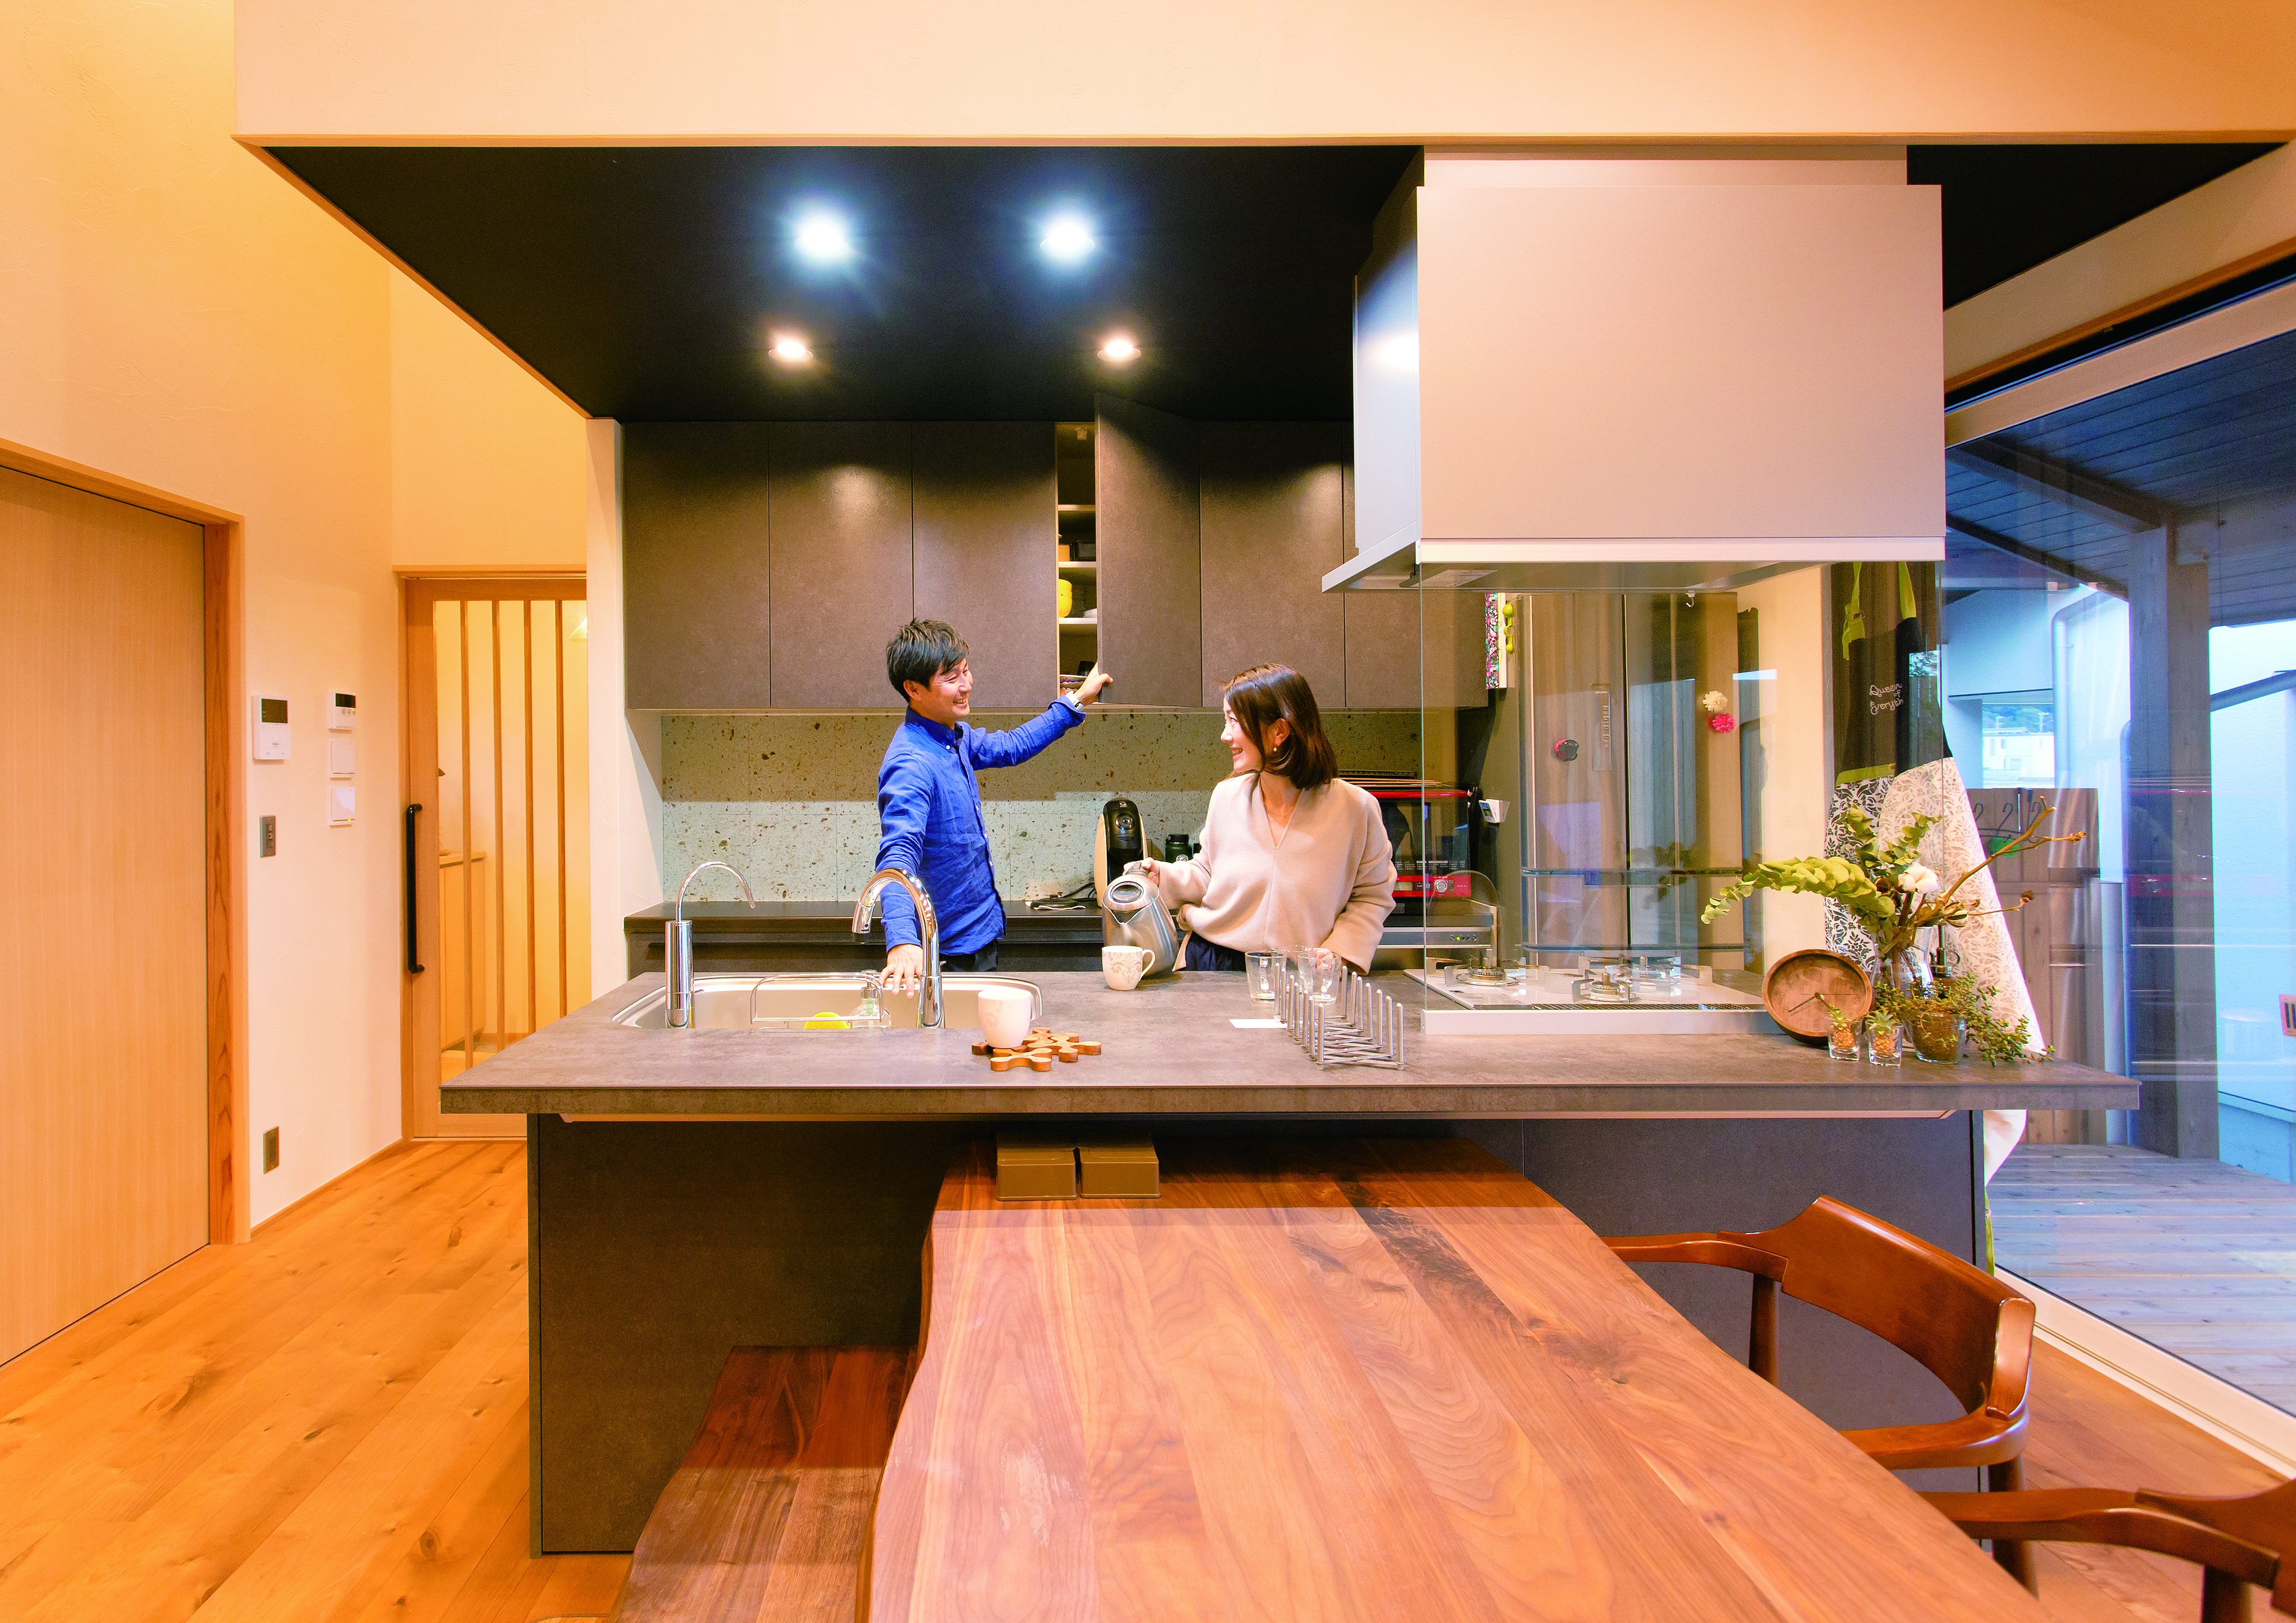 LIXILのアイランドキッチン、その洗練されたデザインが和モダンの空間をより引き立てる。